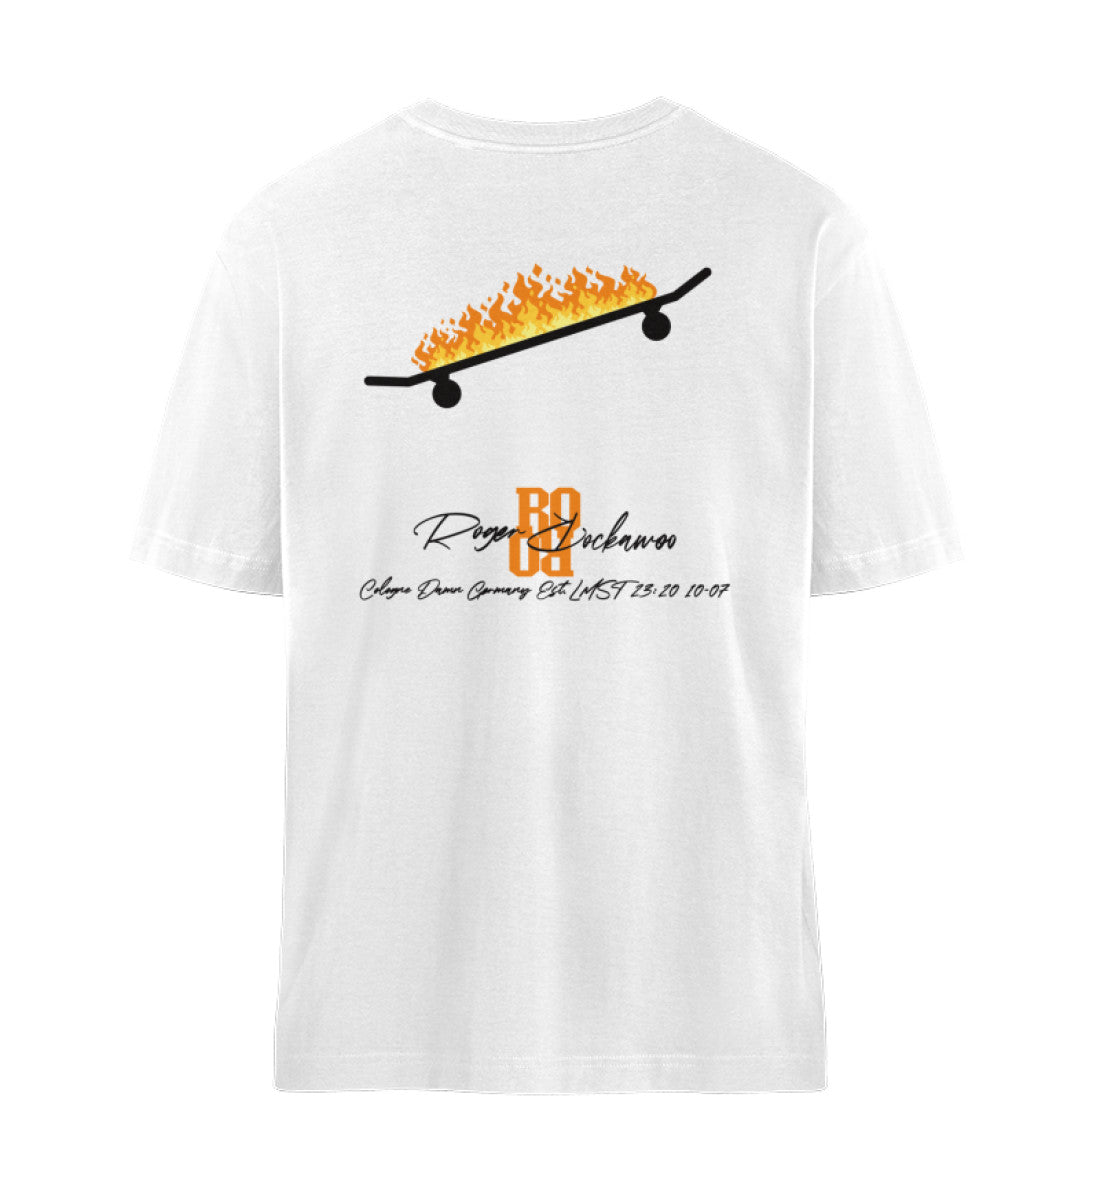 Weißes T-Shirt Unisex Damen und Herren rückseitig bedruckt mit Skateboard Style Print und Logo Schriftzug von Roger Rockawoo Clothing aus der Skateboard Hiss off Kollektion